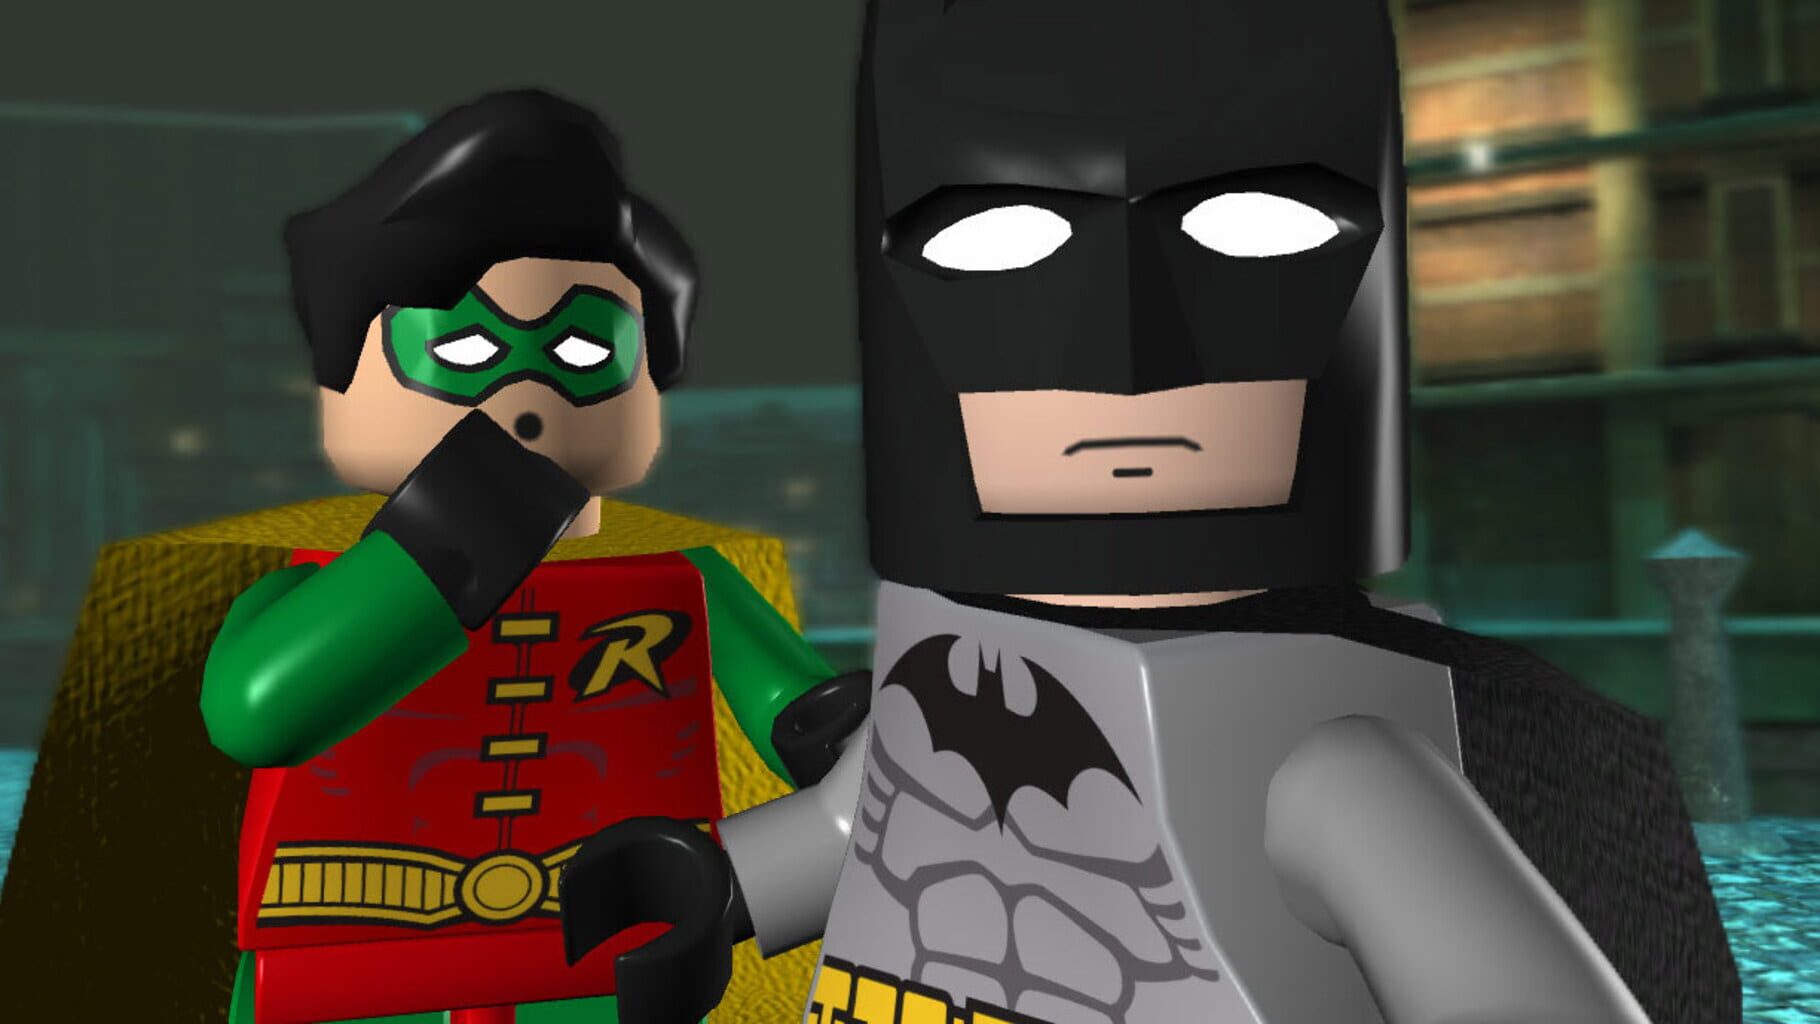 Captura de pantalla - LEGO Batman: The Videogame